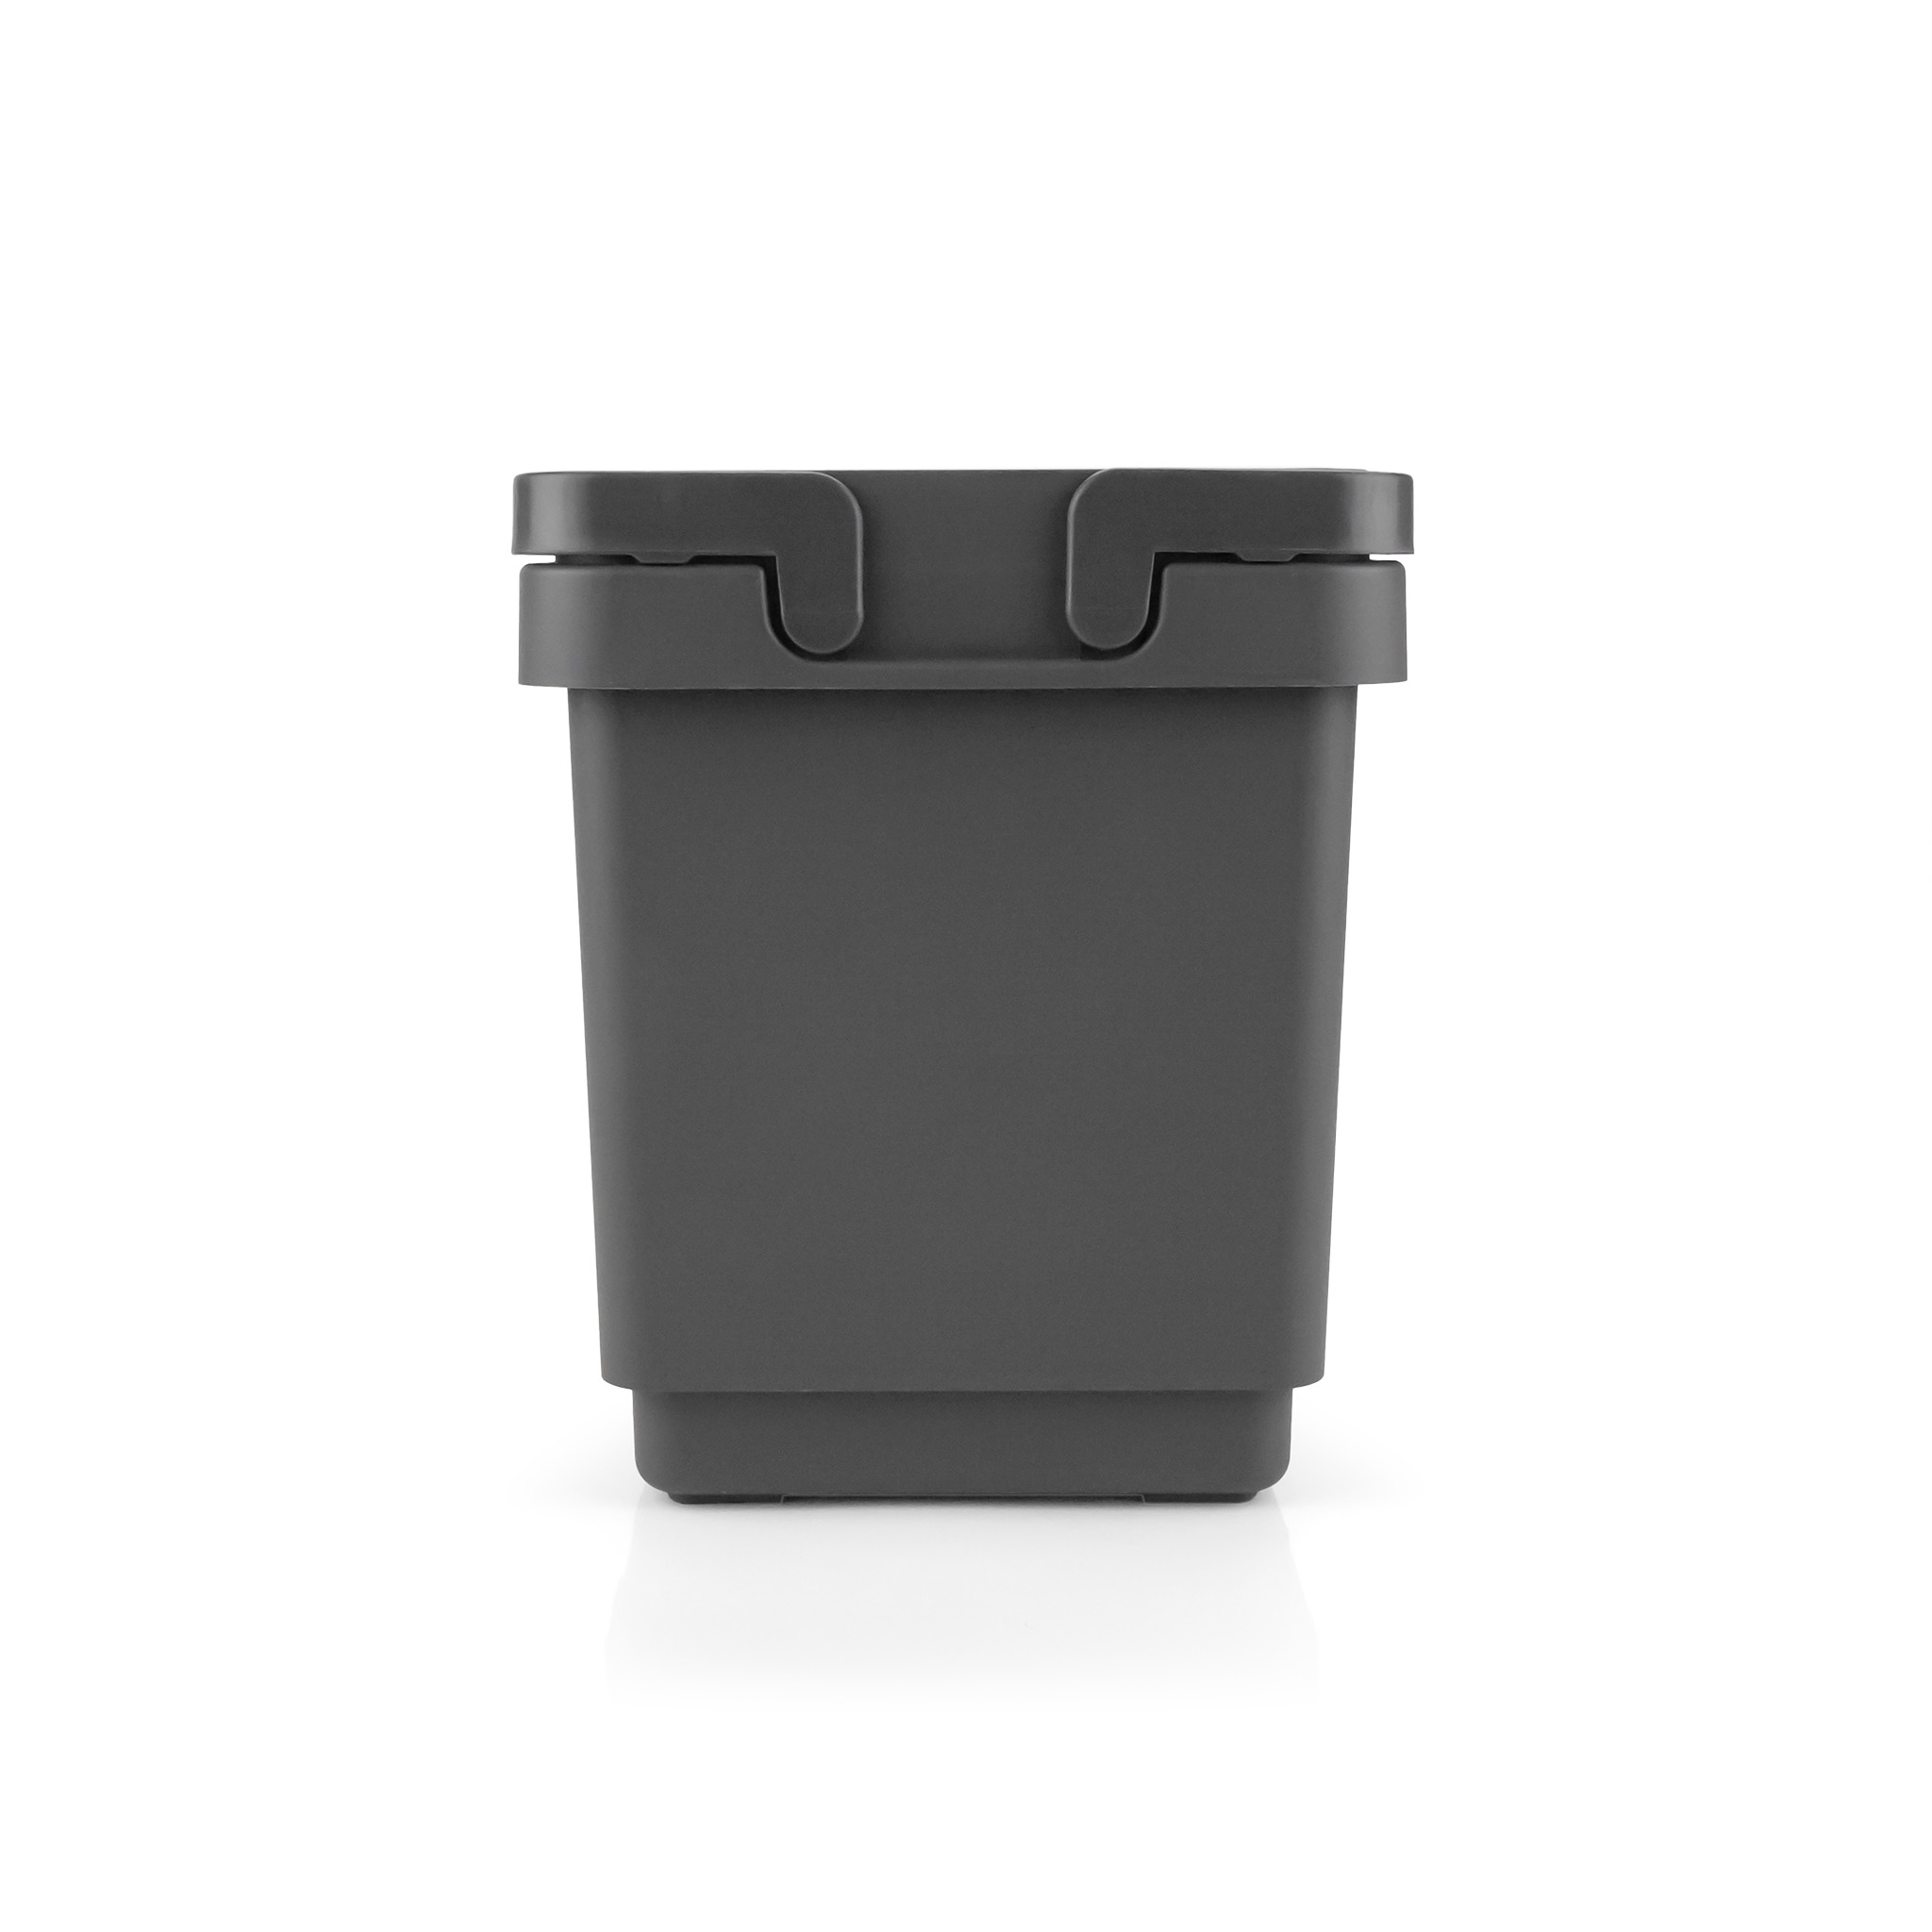 Vibo Mini Kombi Waste System, 21", 30L